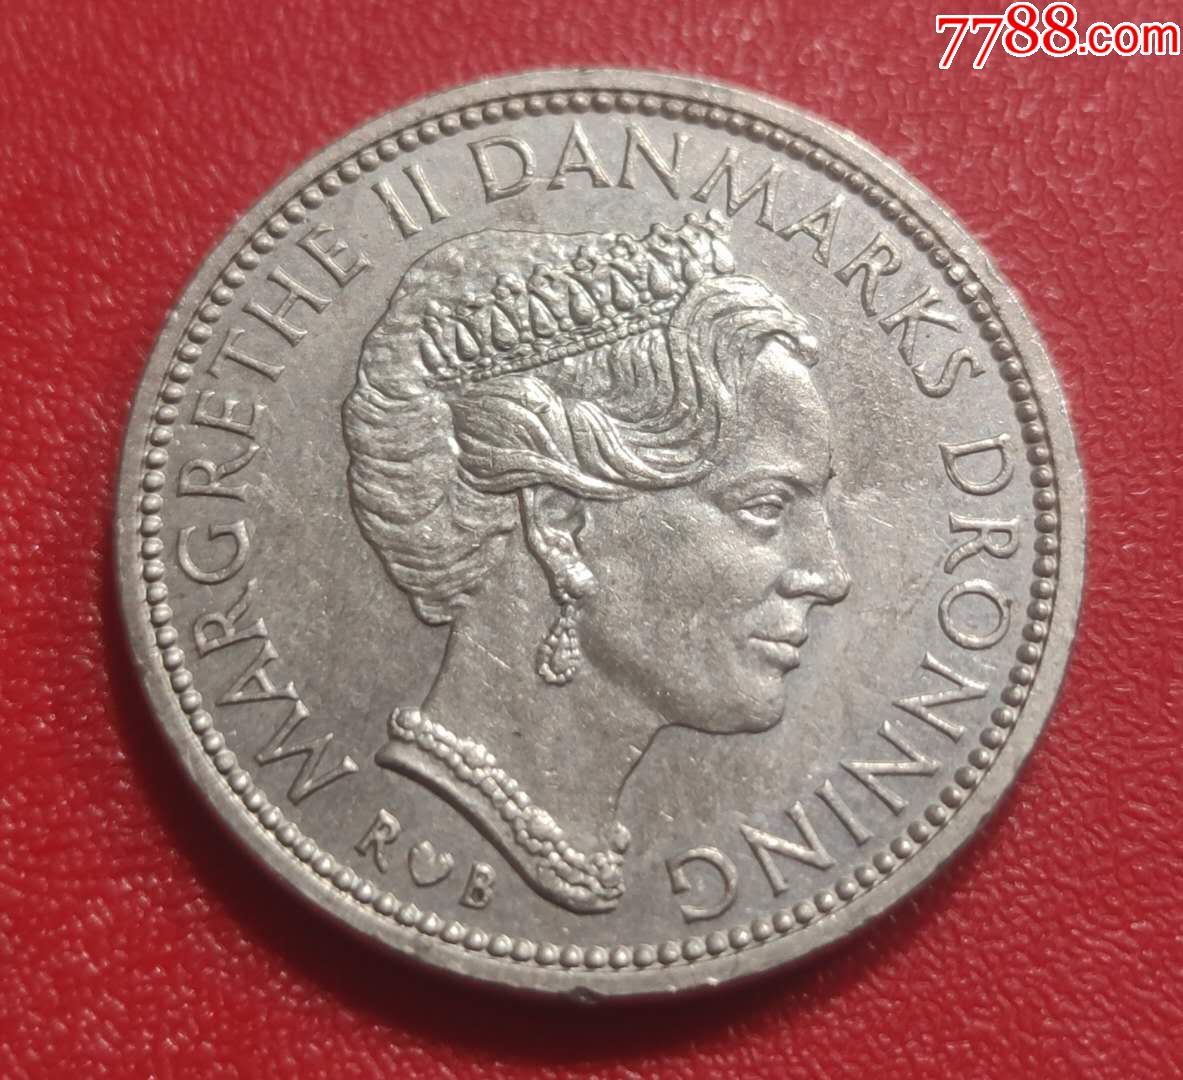 1985年丹麦女王头像10克朗硬币外国钱币收藏真品